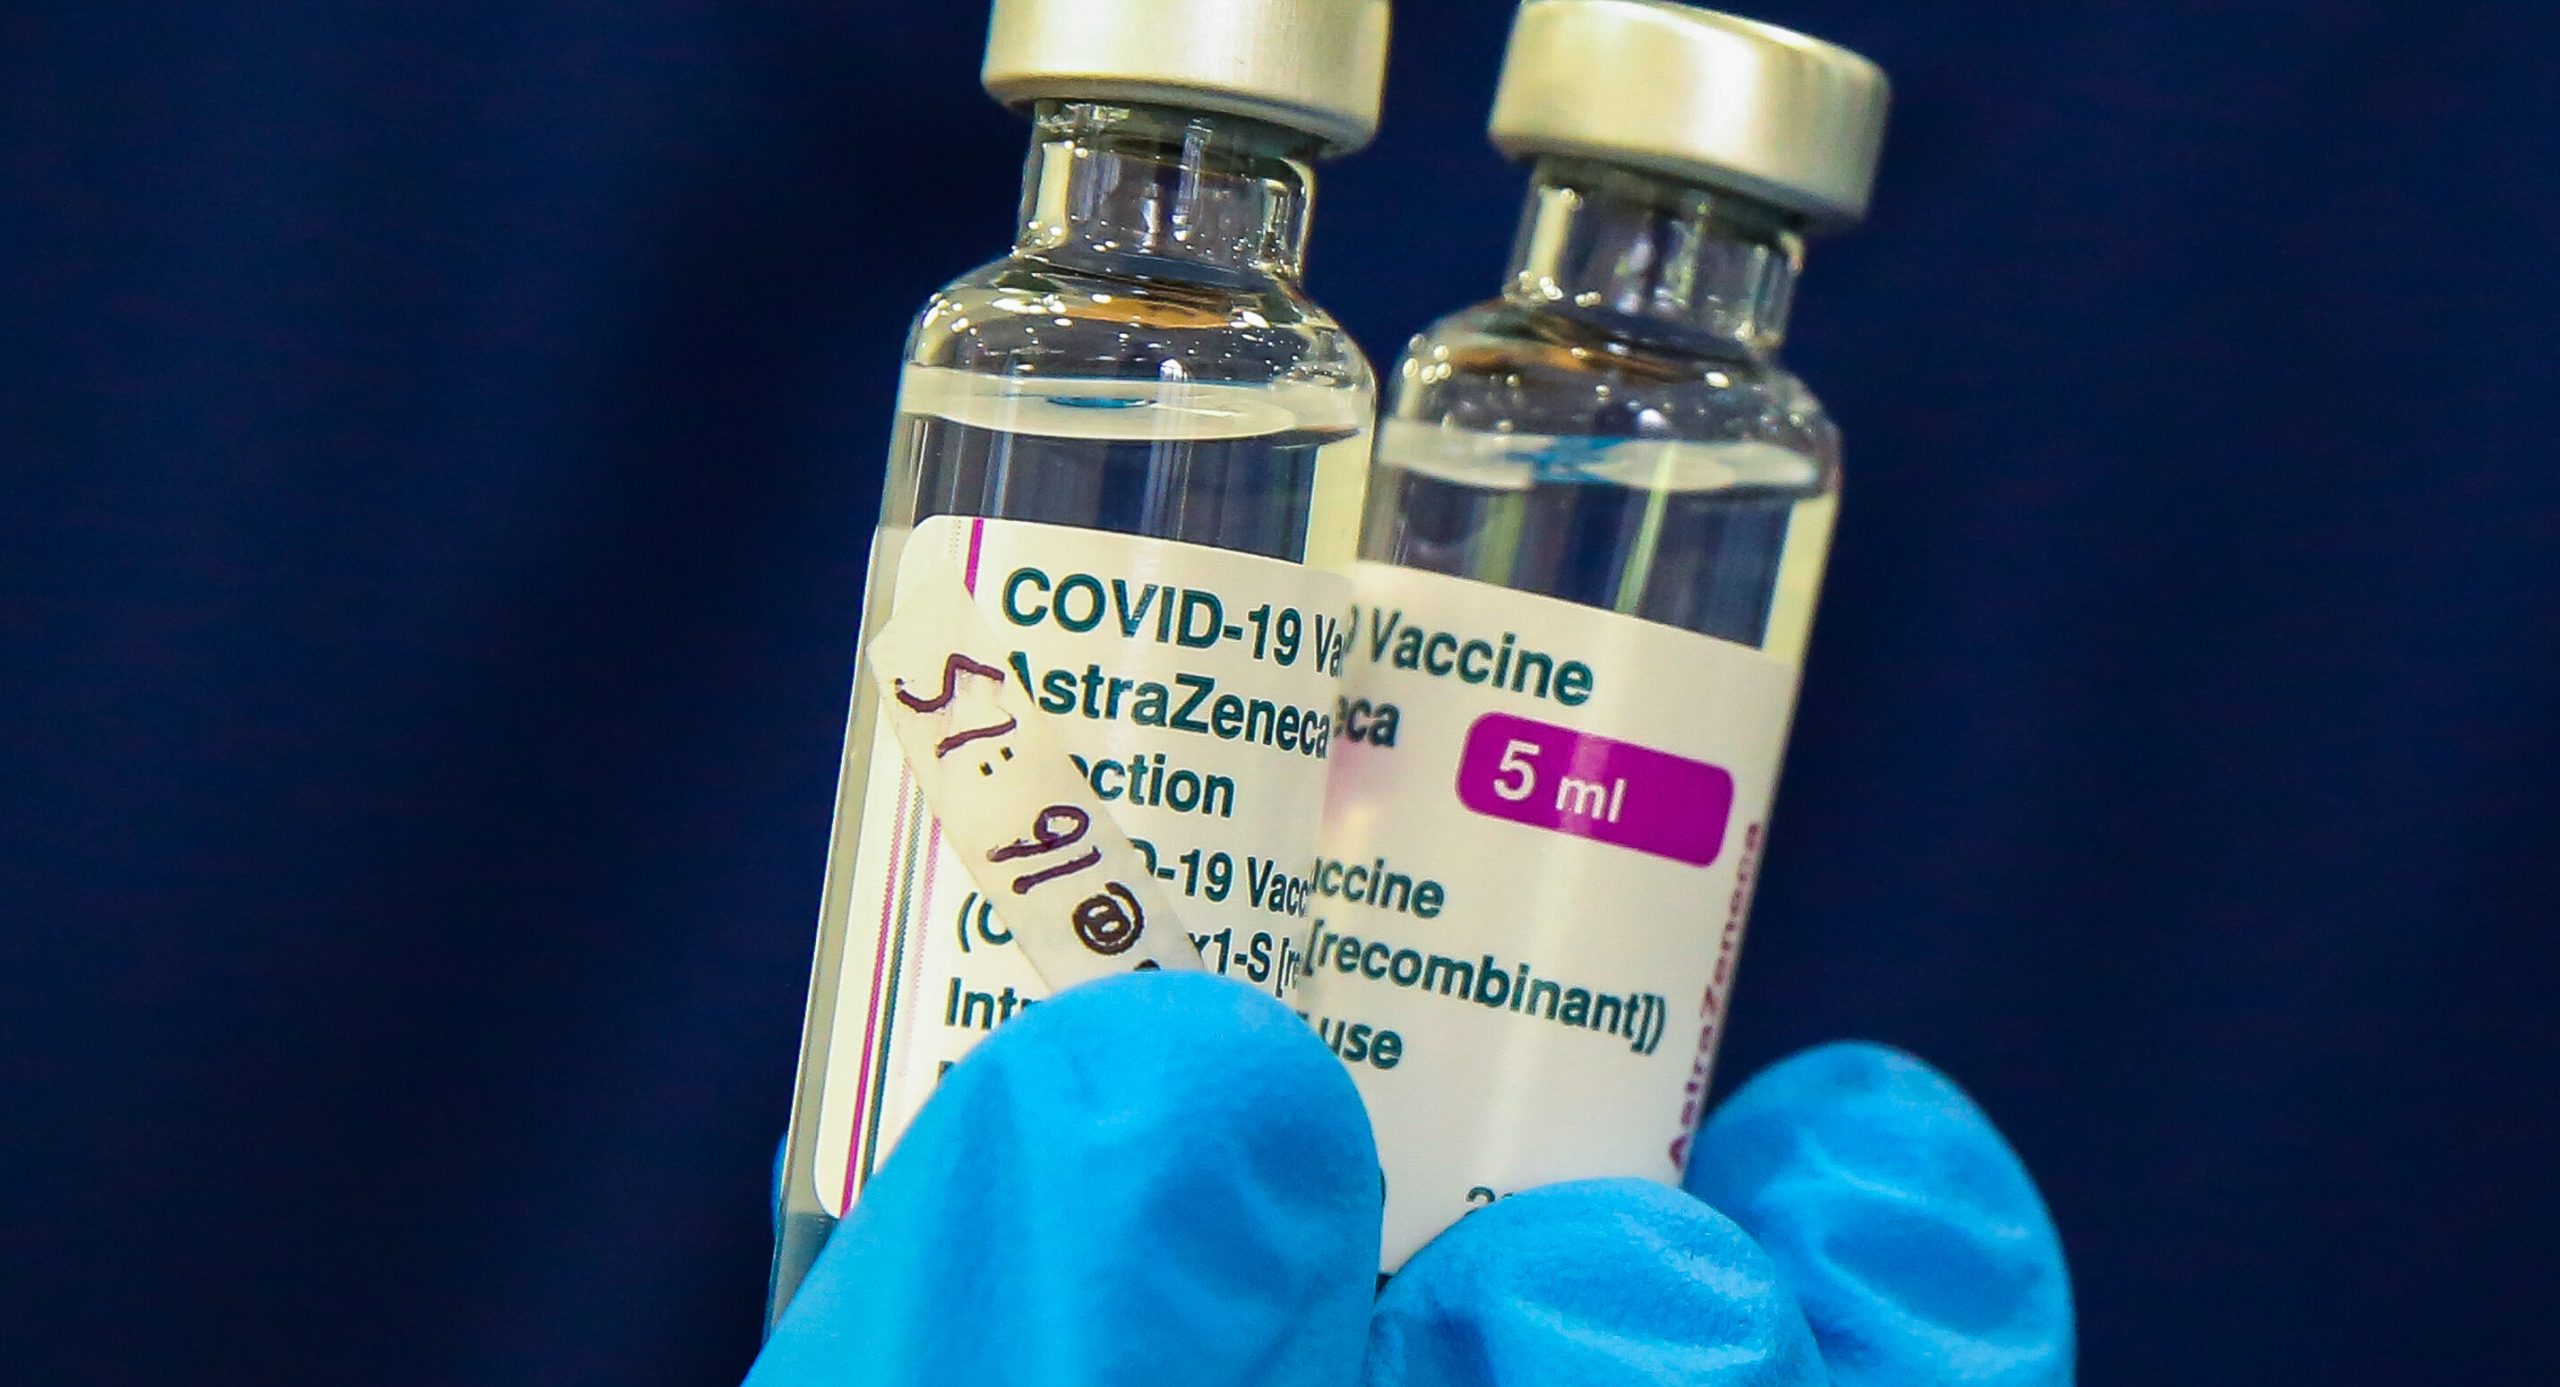 Norvegia renunță definitiv la vaccinul AstraZeneca. Autorizarea serului Johnson&Johnson rămâne incertă